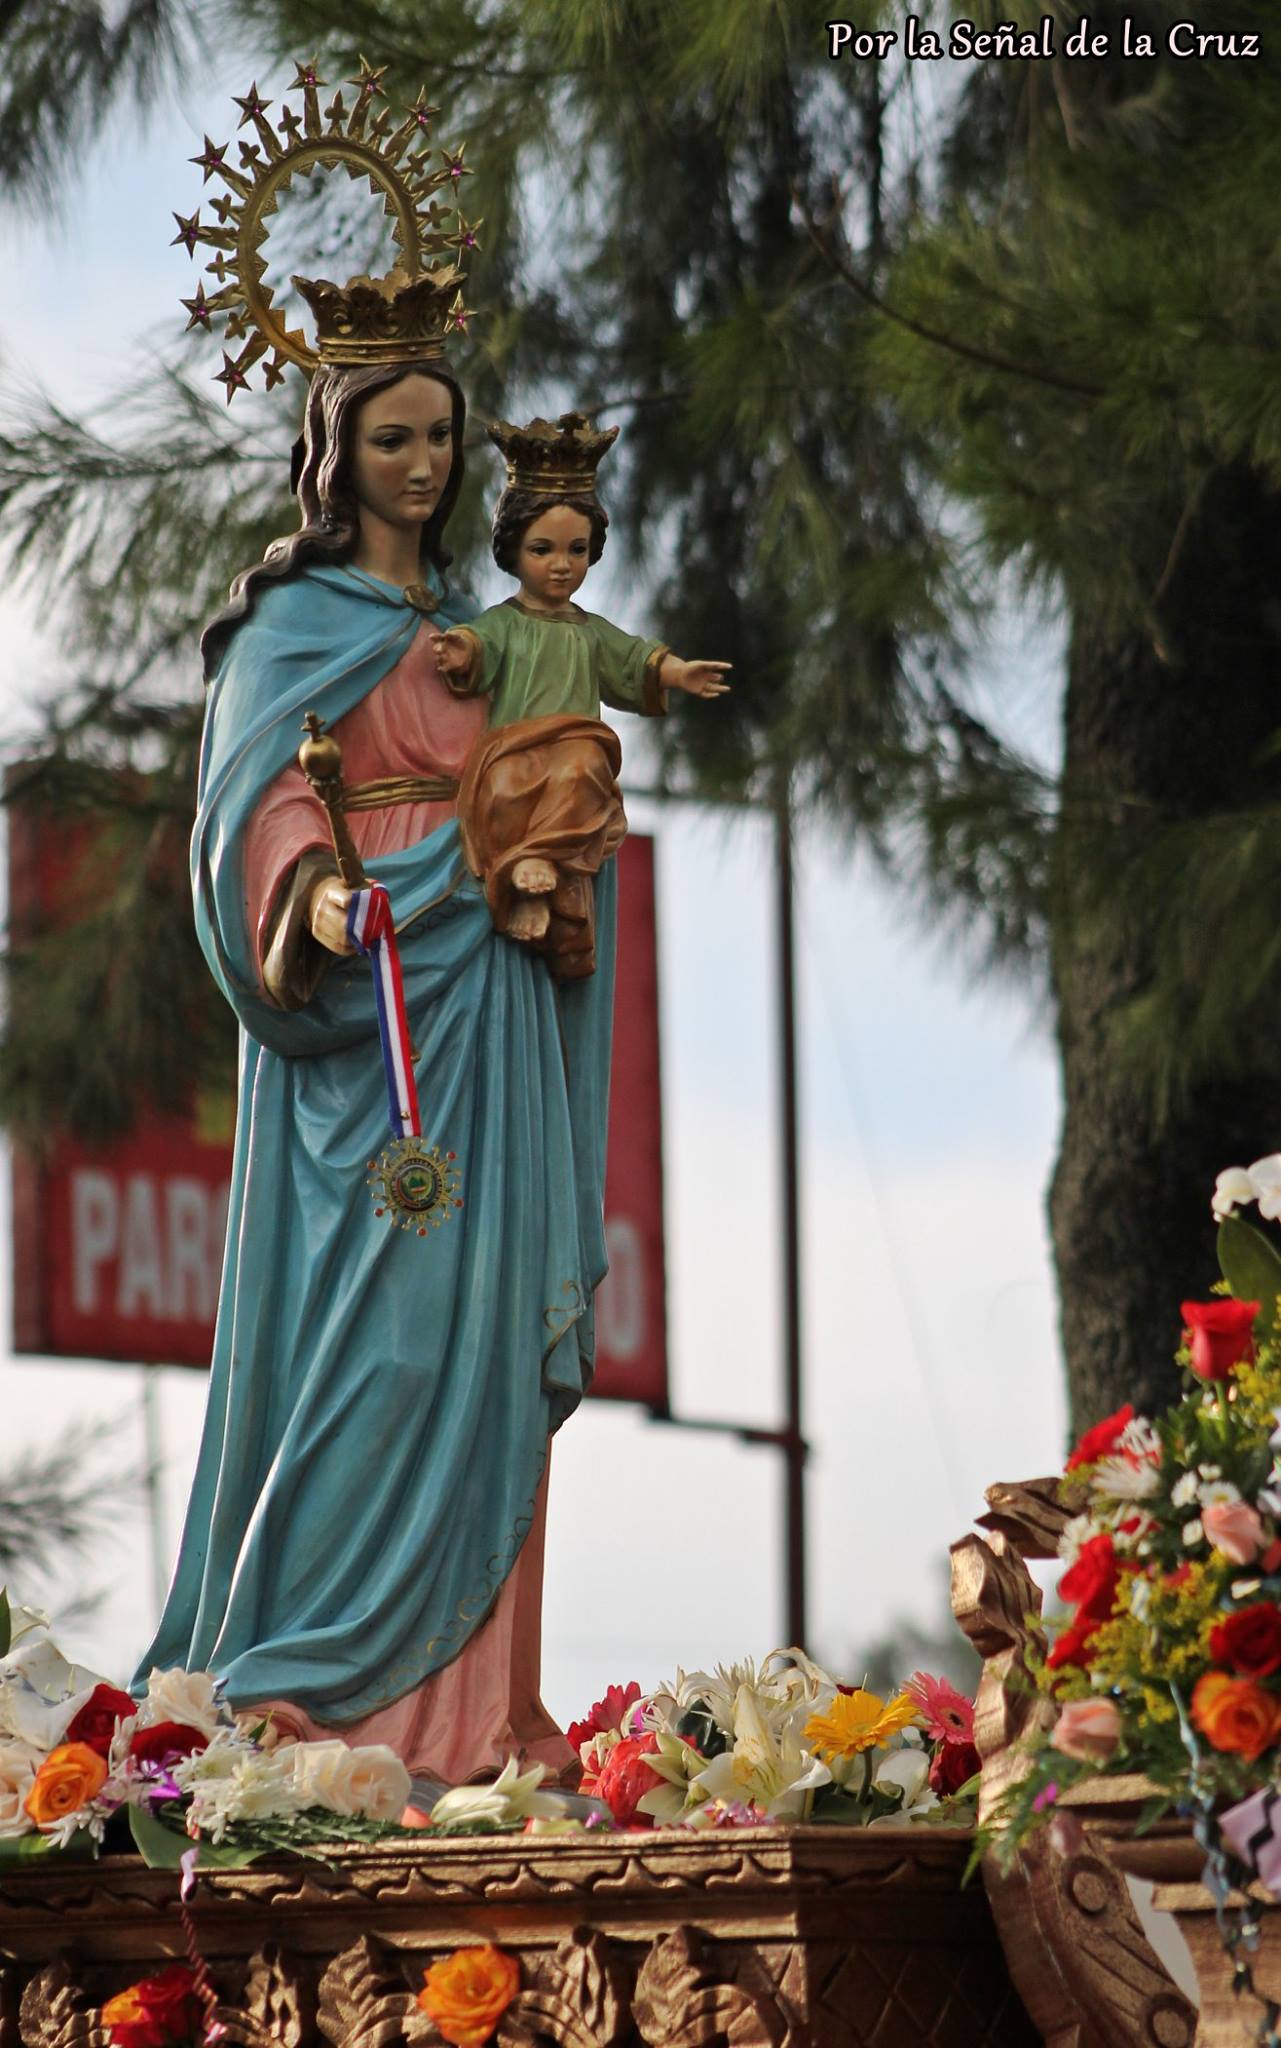 Festividad de Maria Auxiliadora en San Nicolás, Quetzaltenango